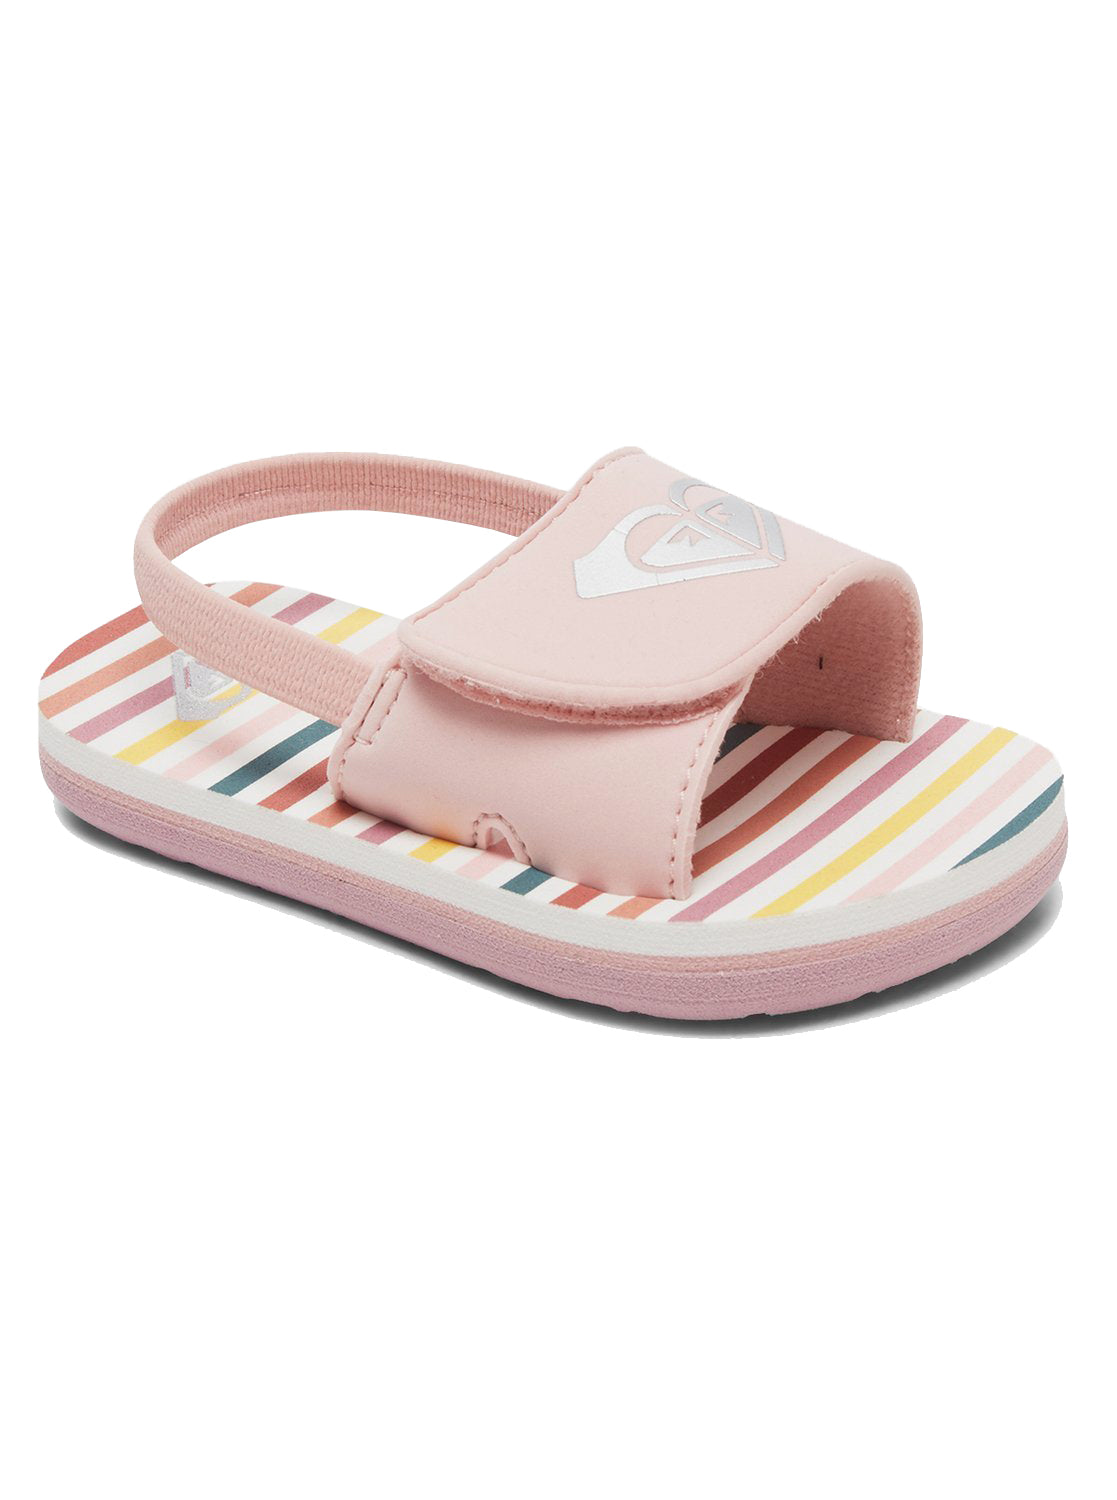 Roxy Finn Toddler Sandal PW0-Pink-White 6 C